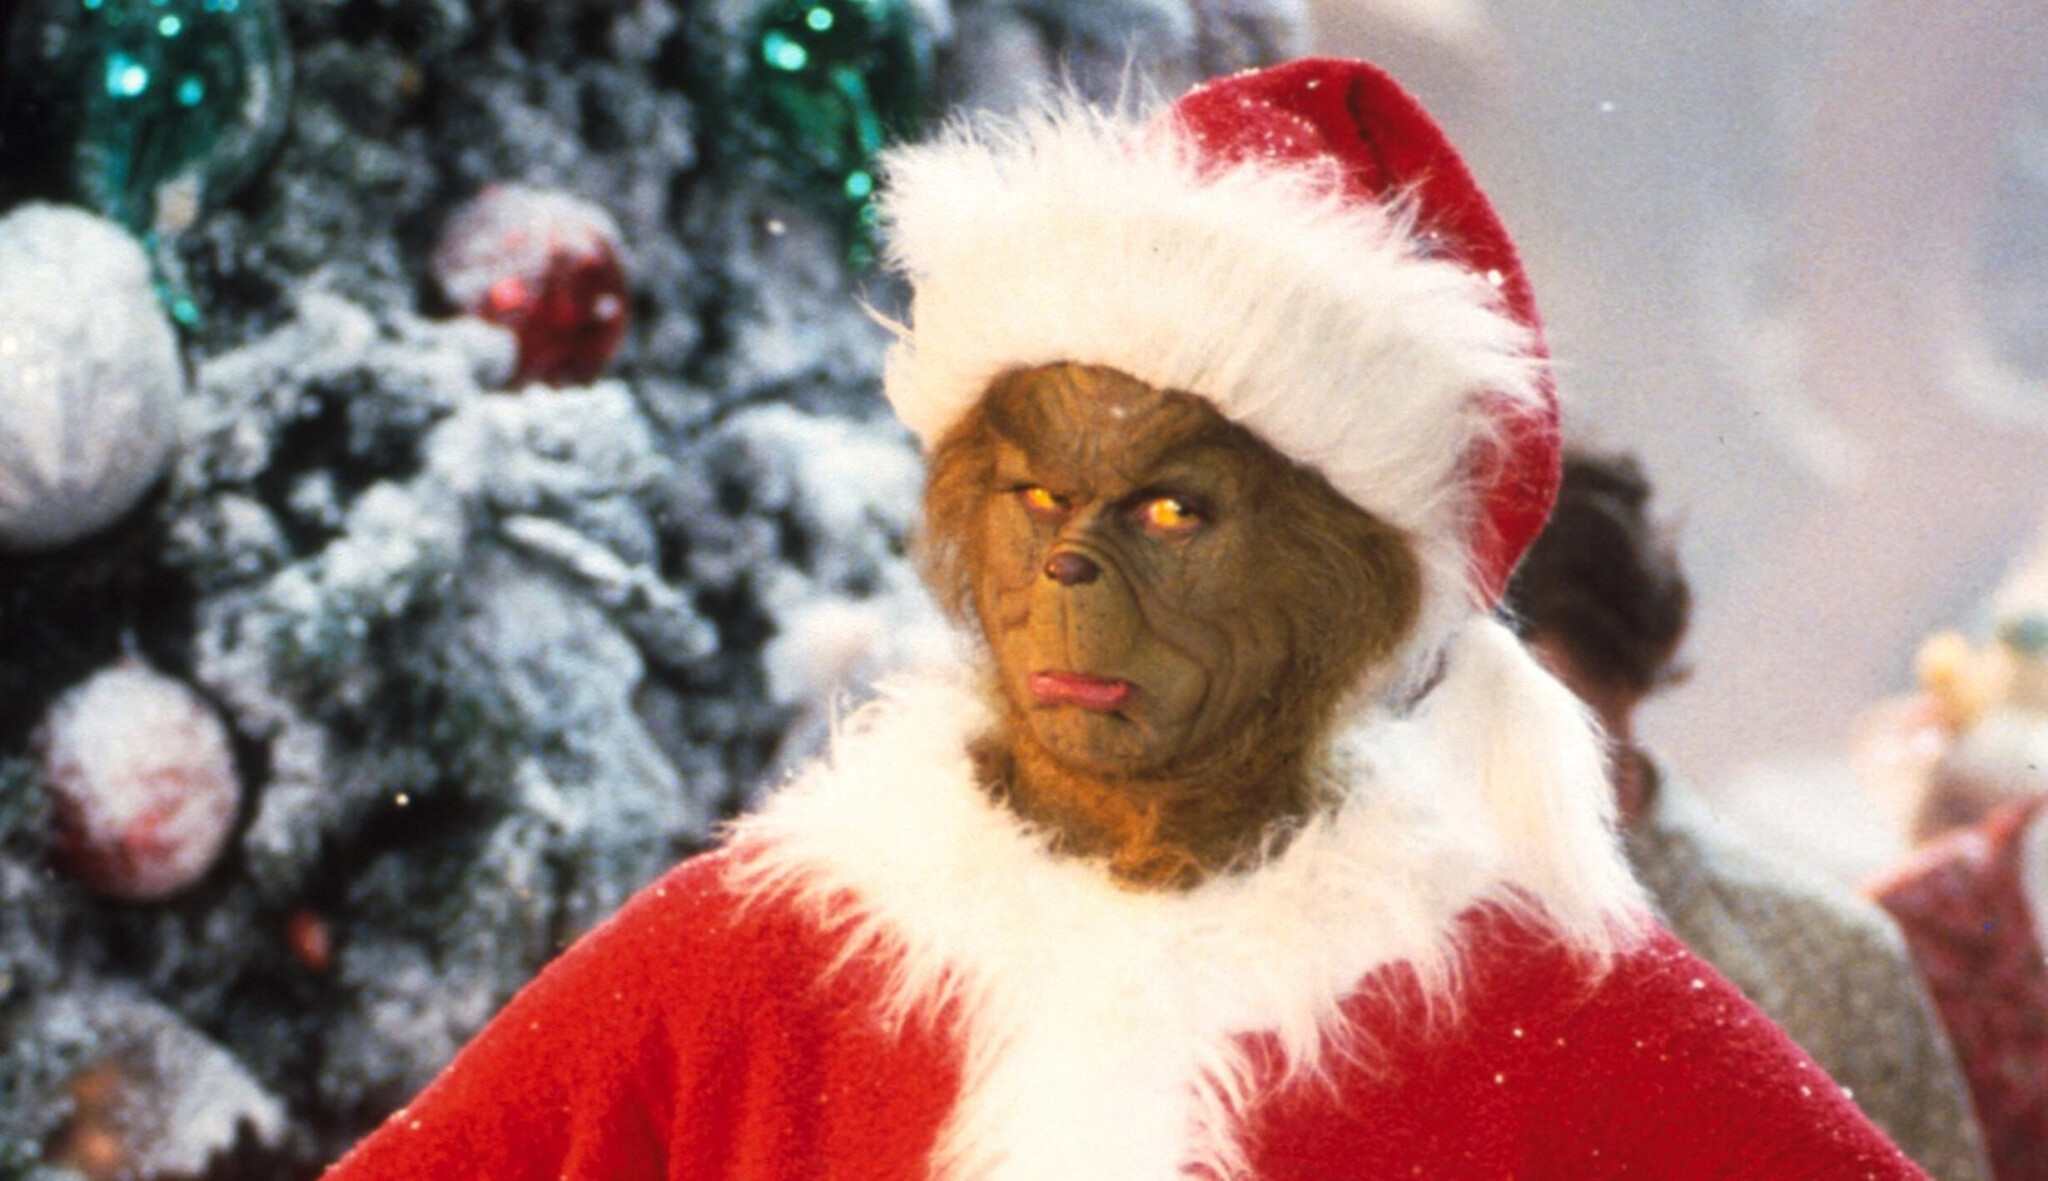 Návod pro Grinche. Co v těchto dnech dělat, když nesnášíte Vánoce?